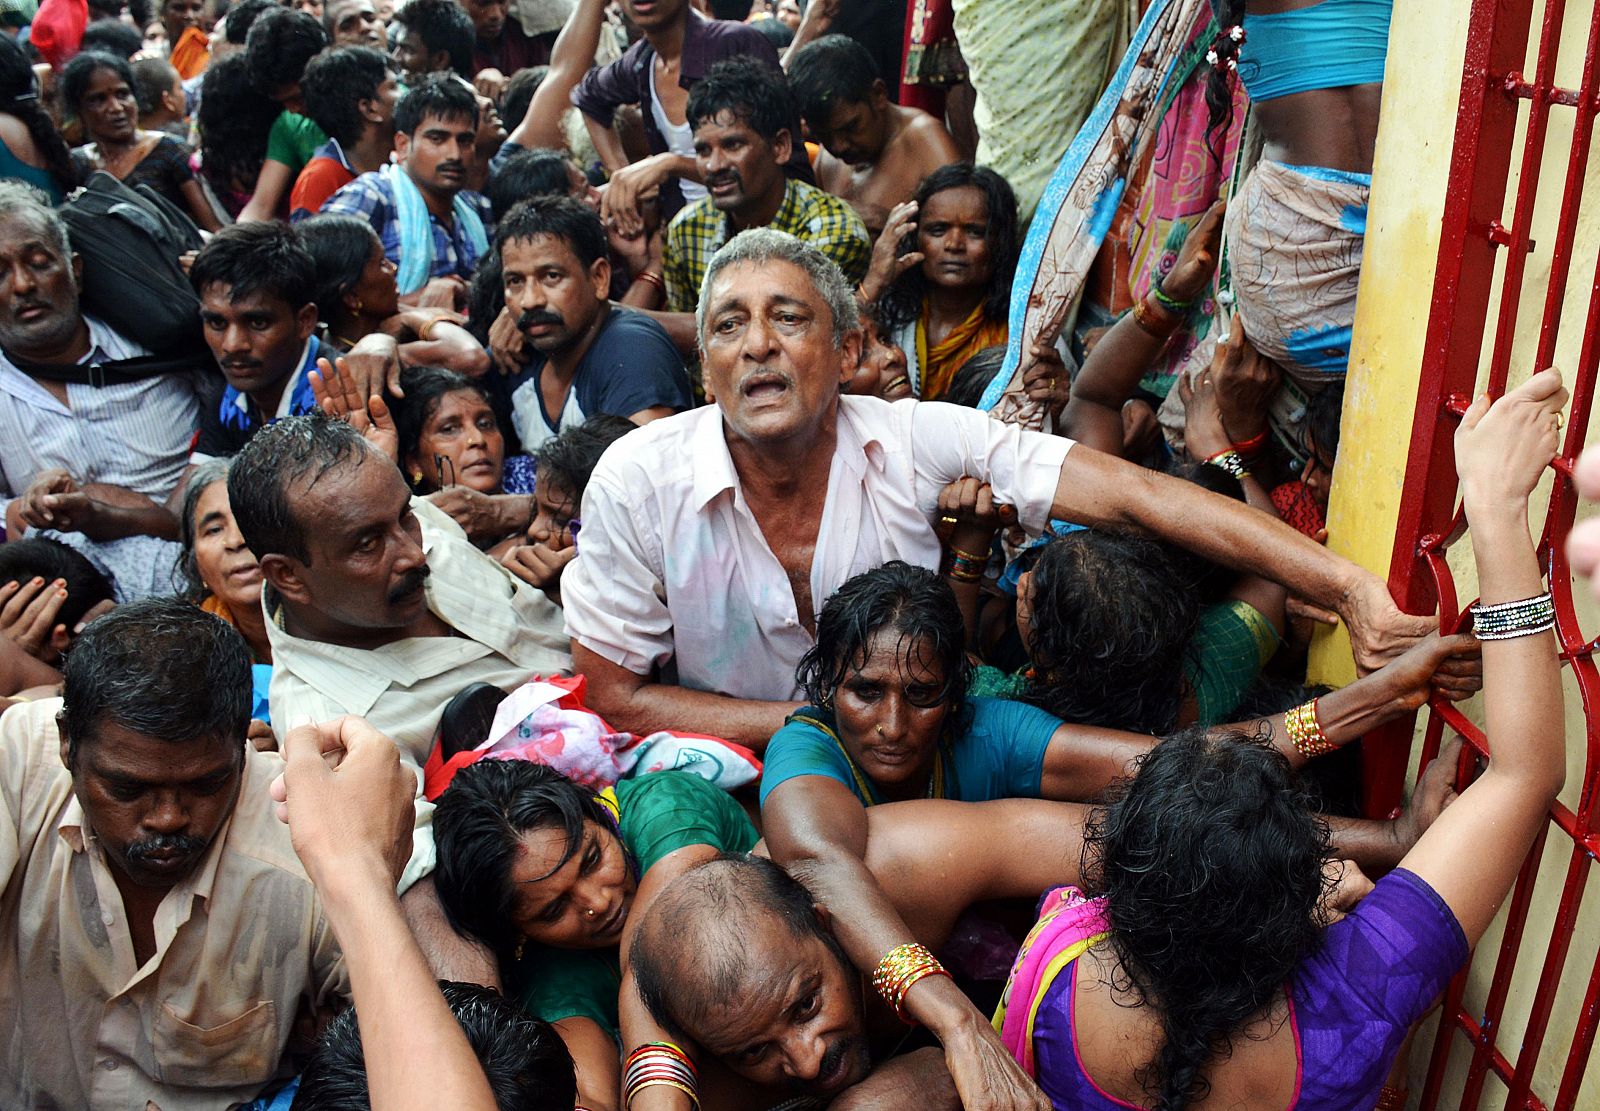 Peregrinos después de una estampida en un festival religioso en India